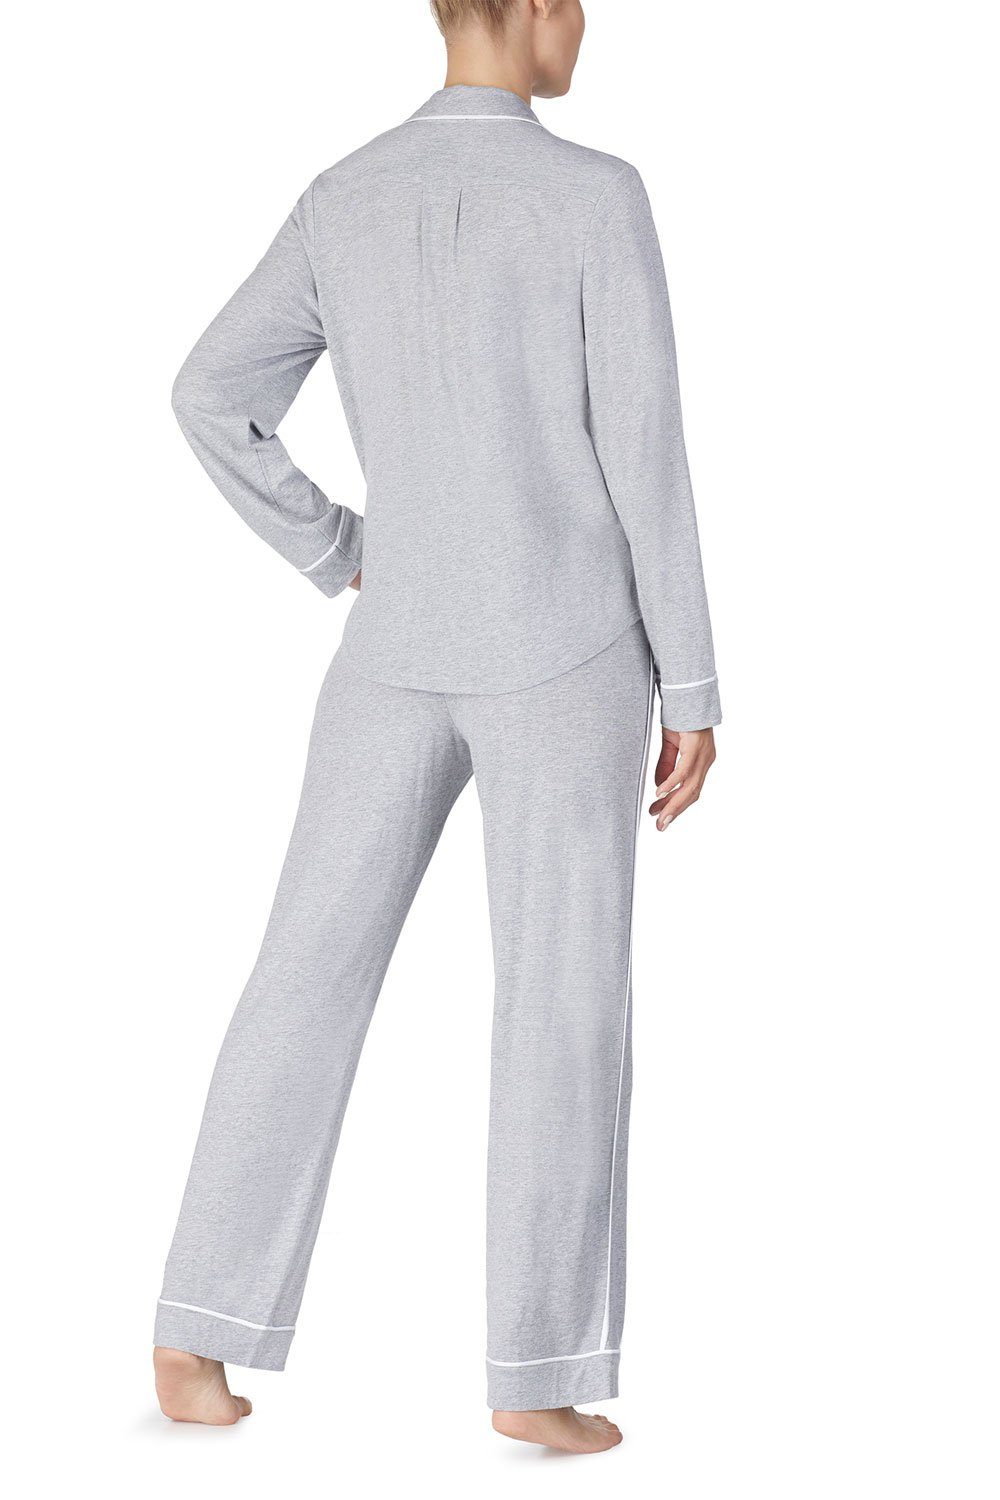 Set & Pant Pyjama DKNY Top YI2719259 grey